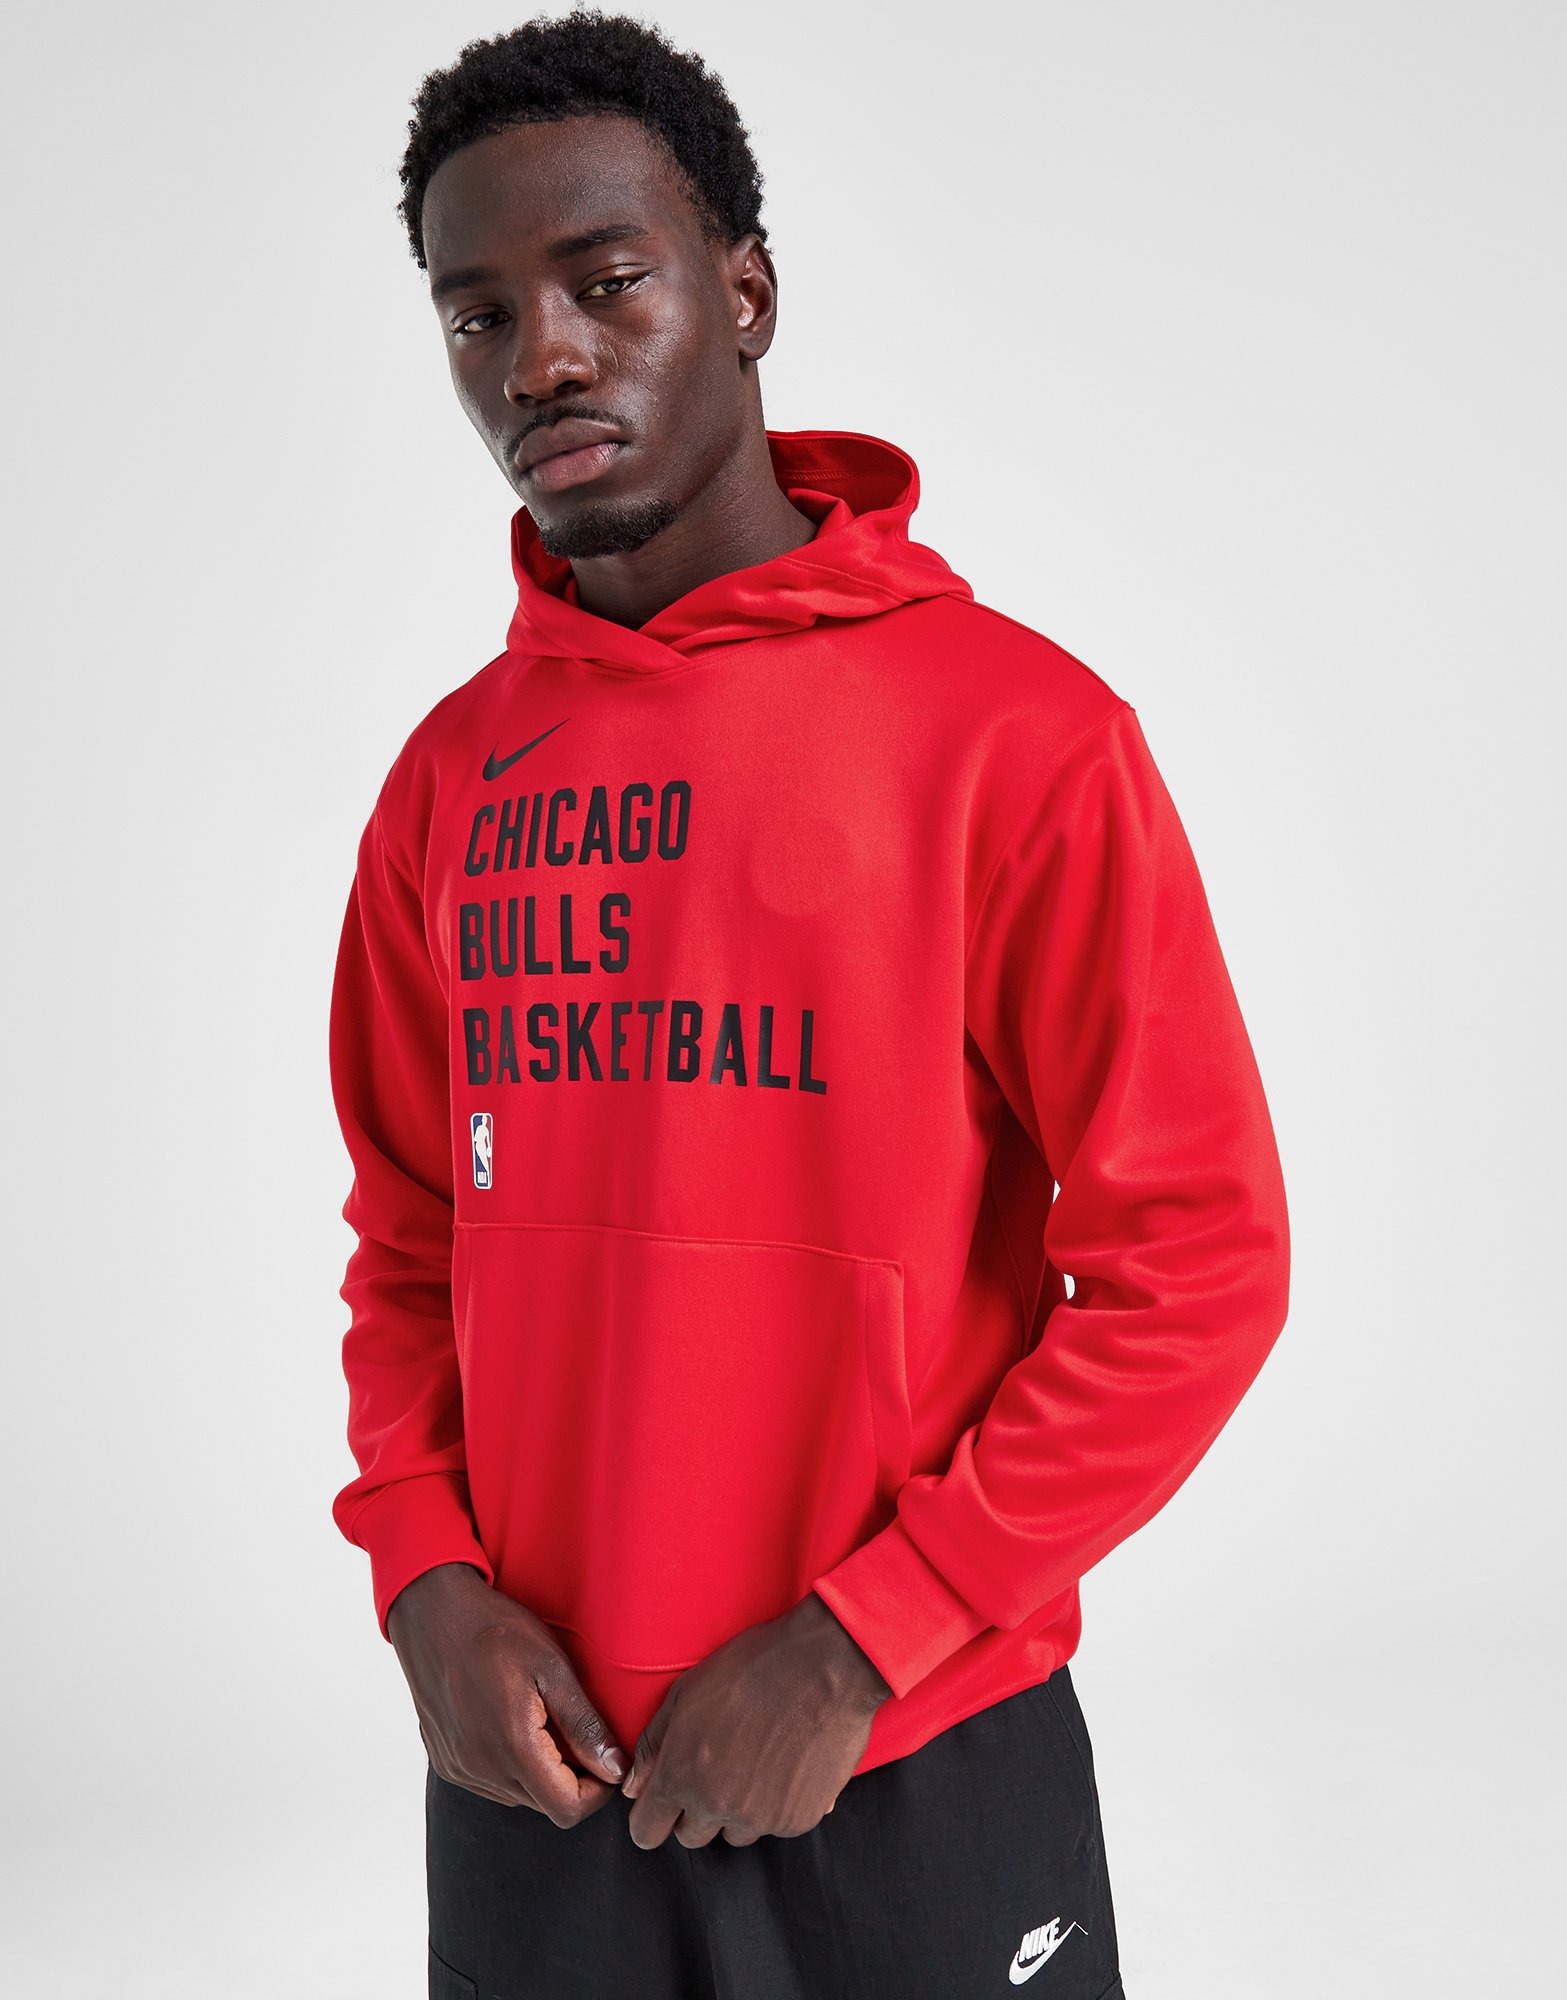 UNK Boys Black Fleece Interior Zip NBA Chicago Bulls Hoodie Sweatshirt L  14-16